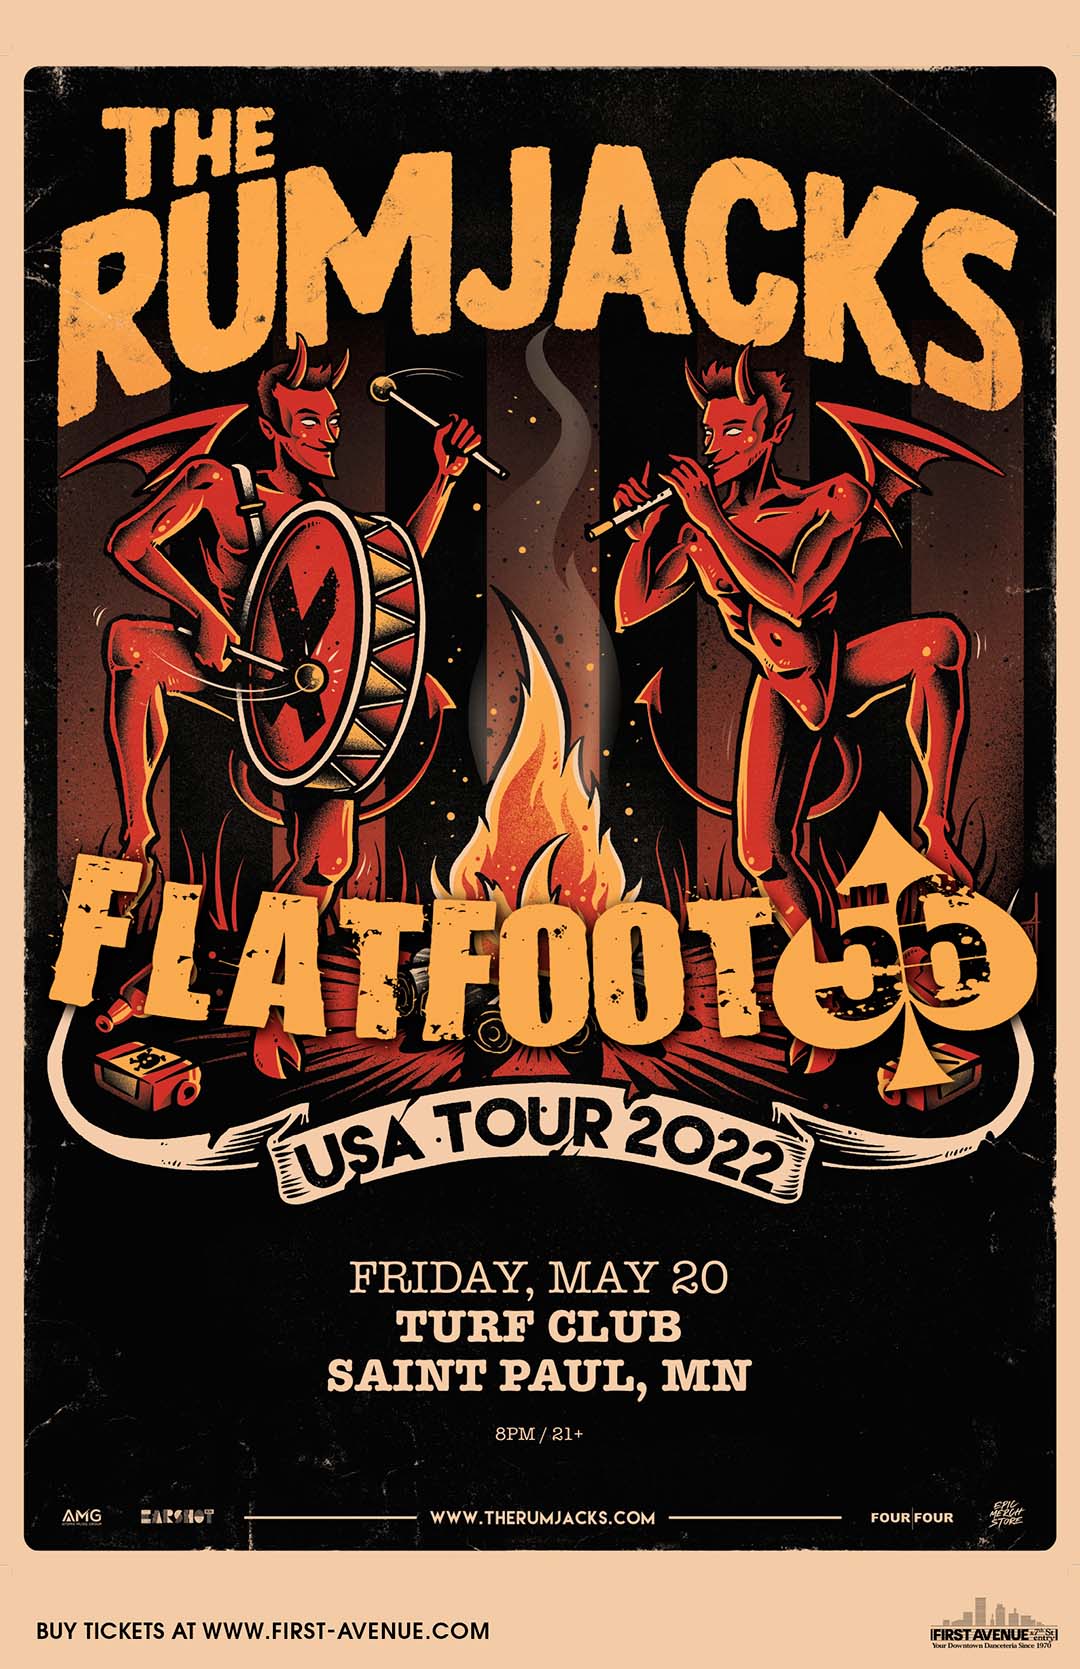 flatfoot 56 tour